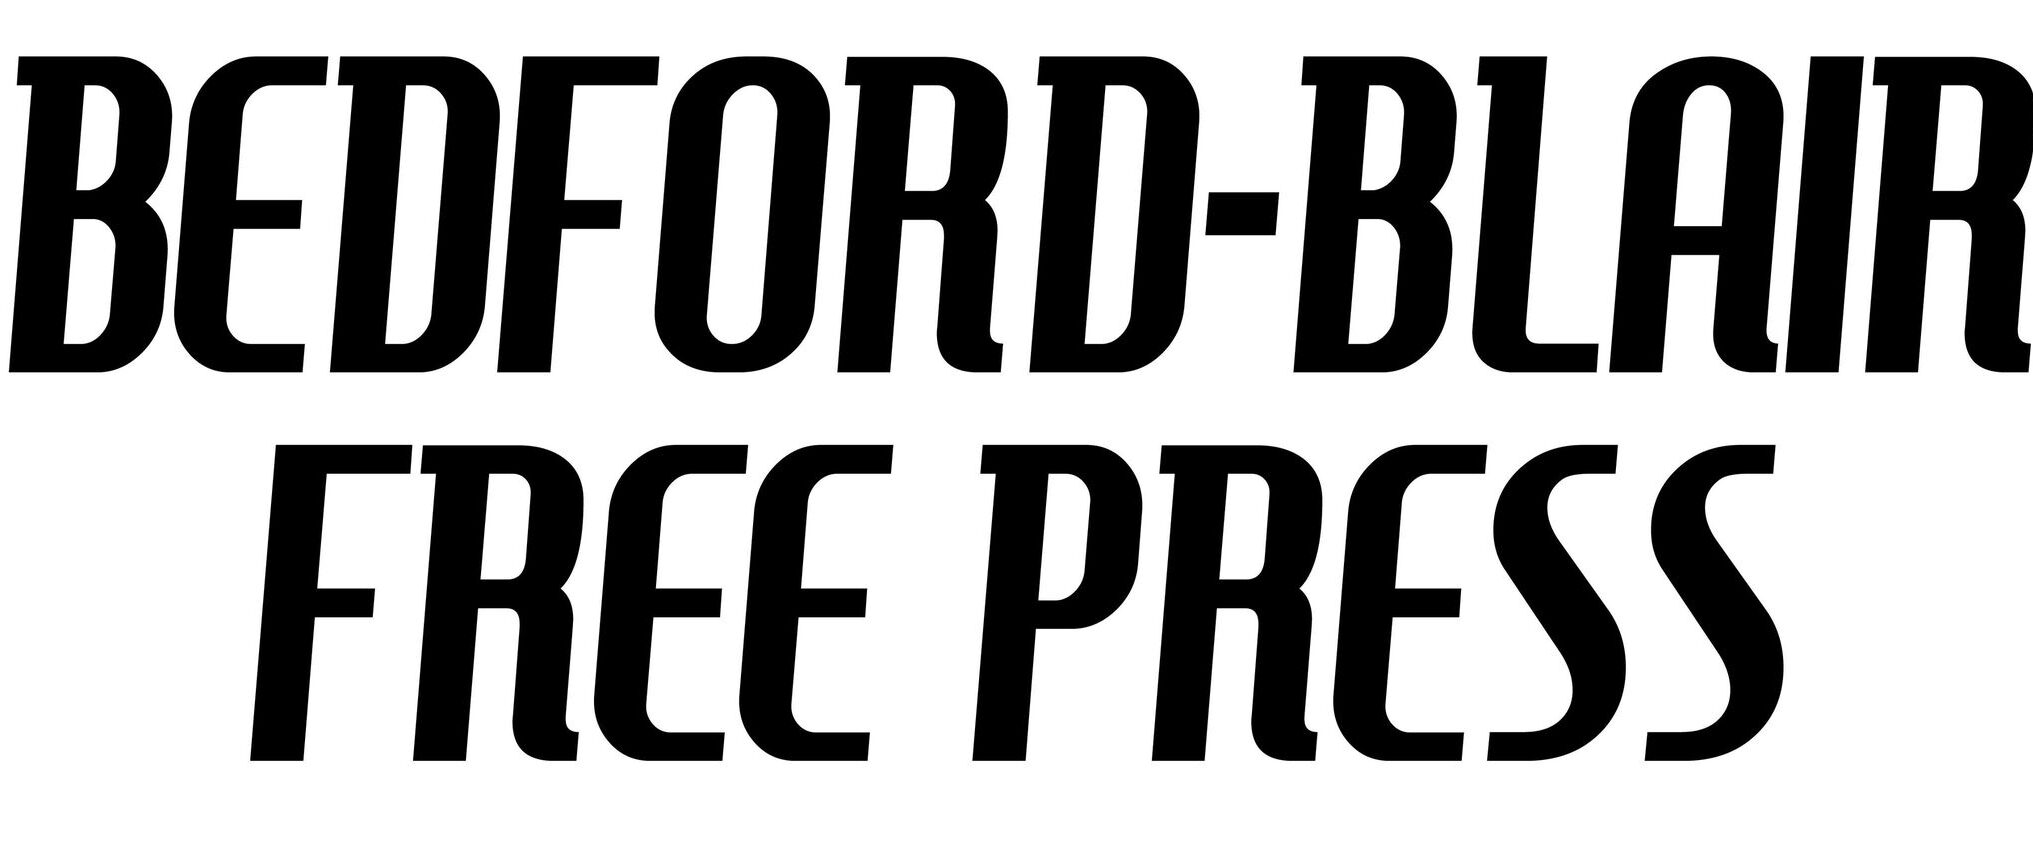 BEDFORD-BLAIR FREE PRESS